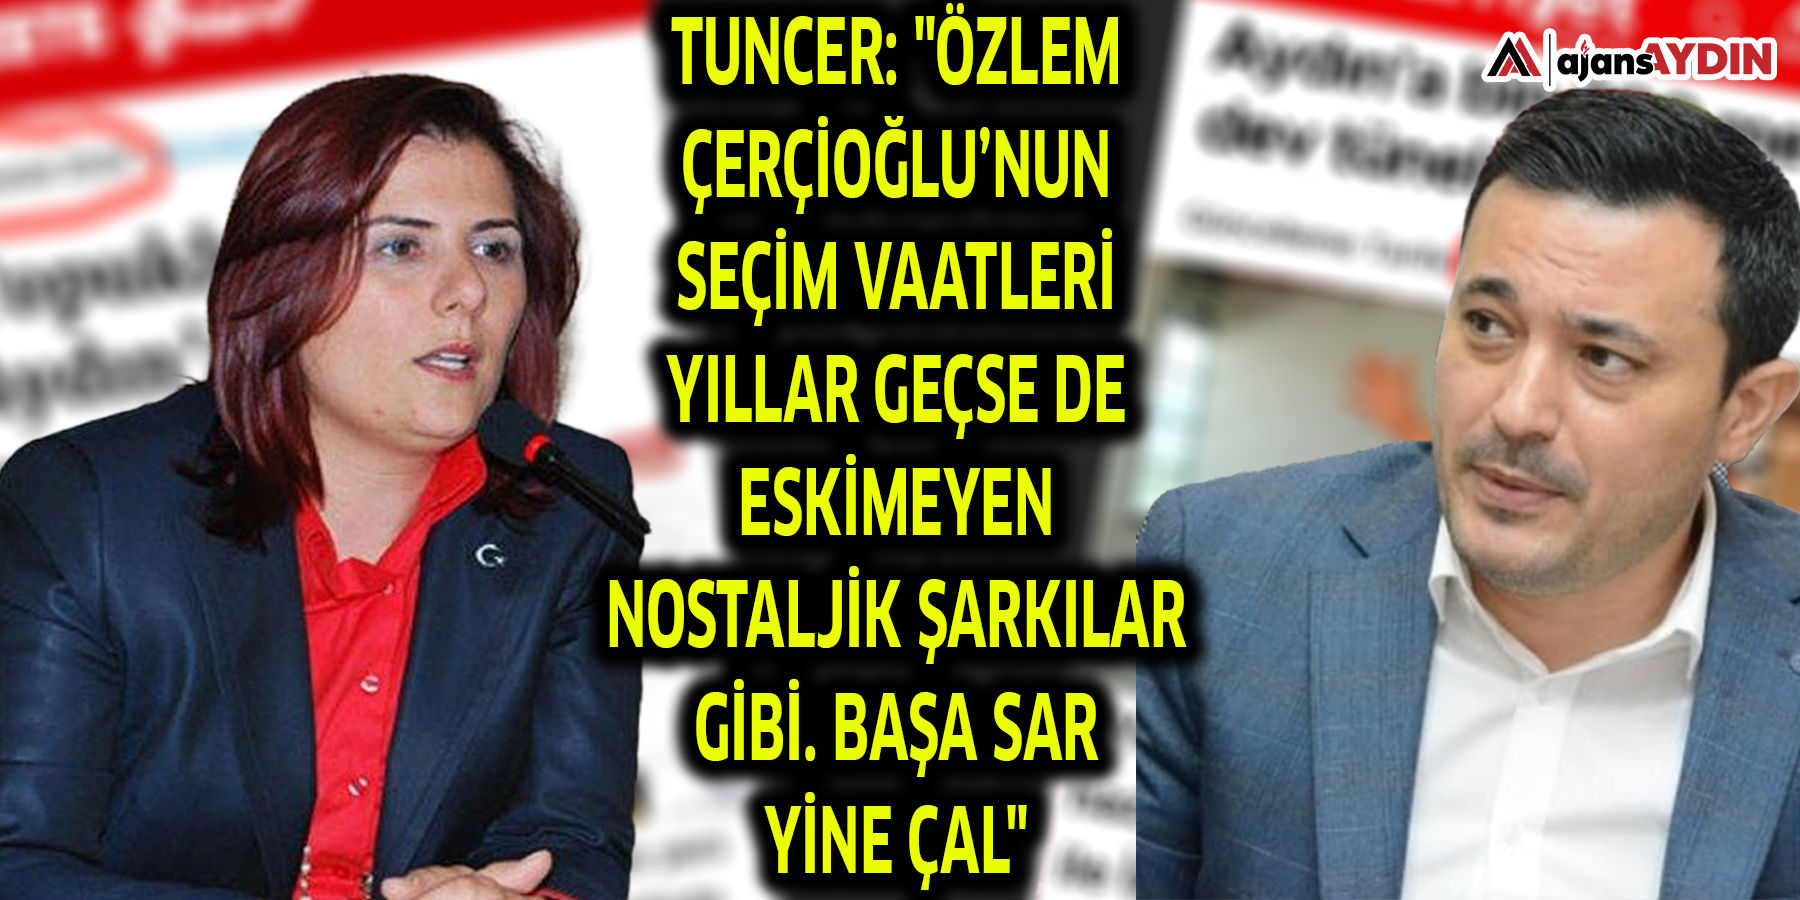 Tuncer: "Özlem Çerçioğlu’nun seçim vaatleri yıllar geçse de eskimeyen nostaljik şarkılar gibi. Başa sar yine çal"